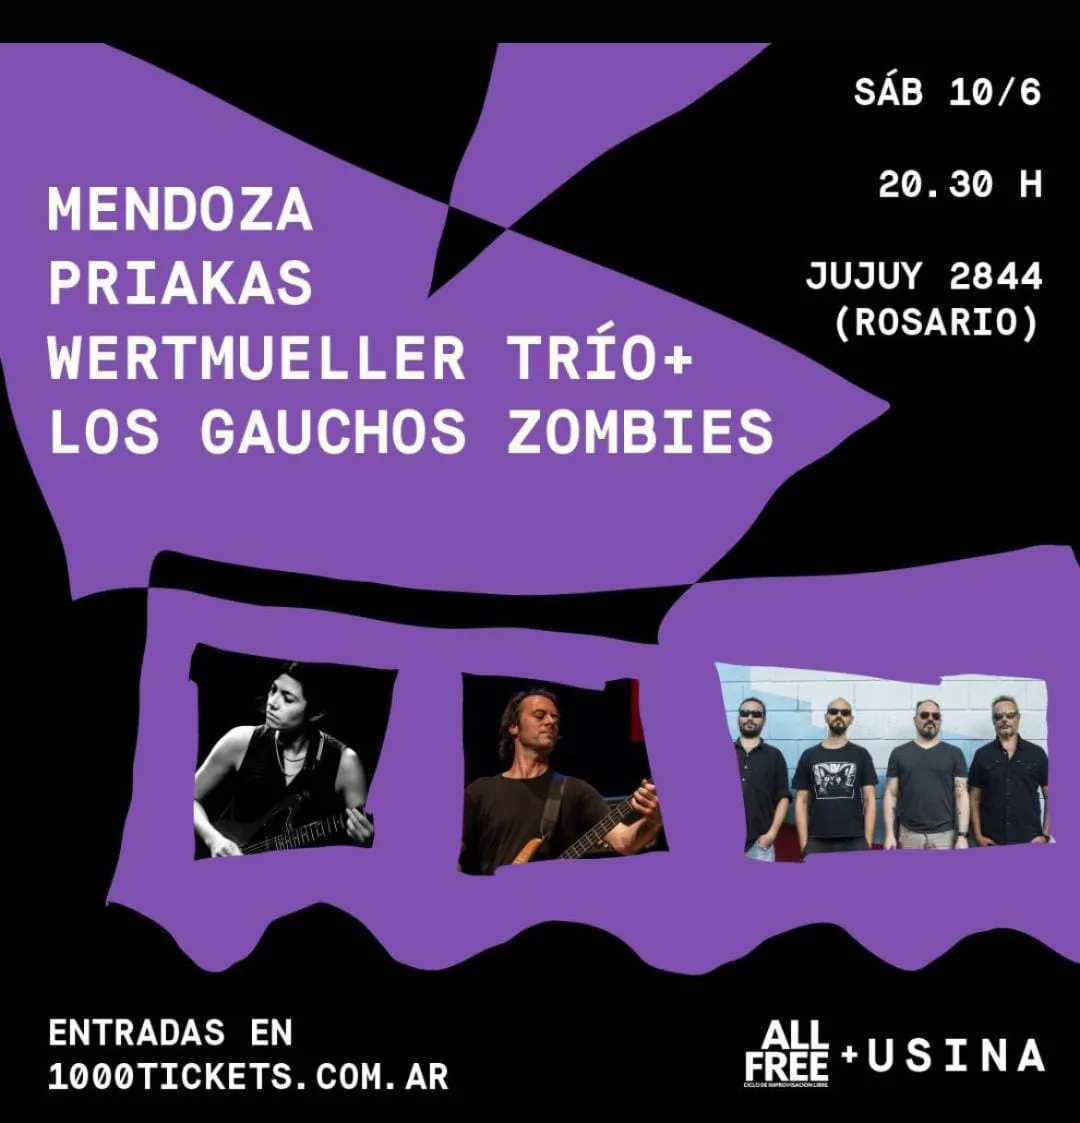 Mendoza – Priakas – Wertmueller trio + Los Gauchos Zombies